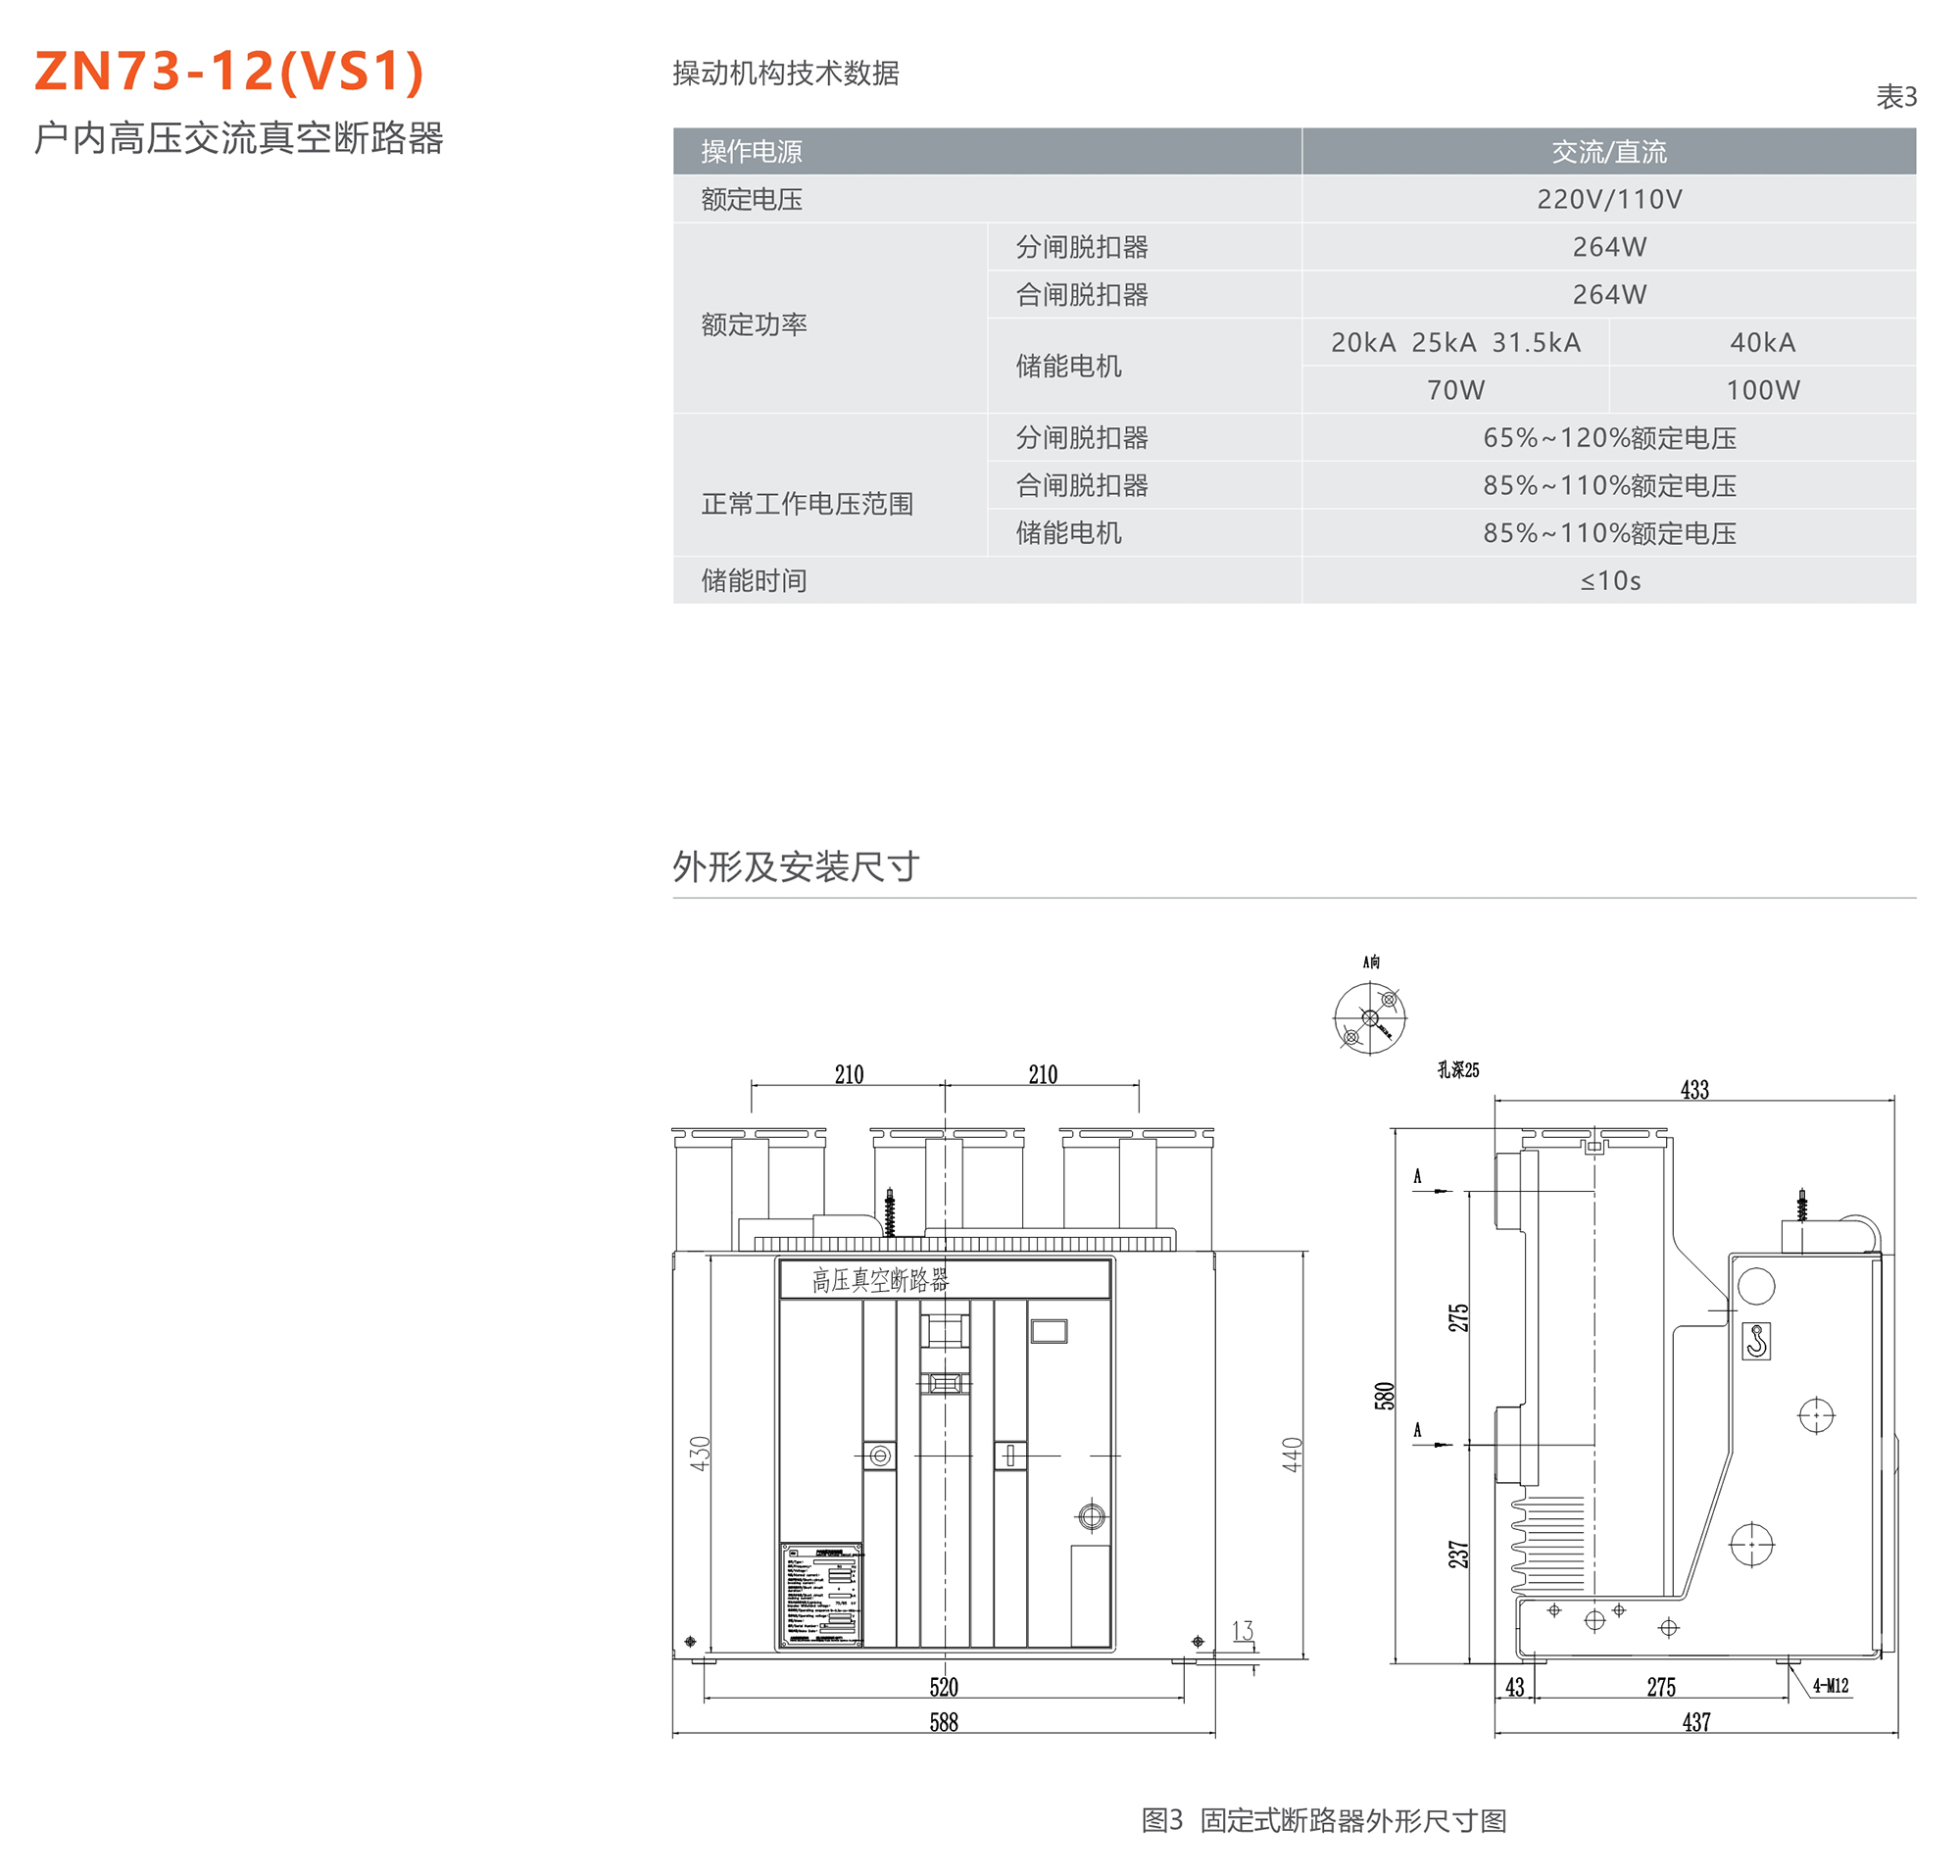 44118太阳成城集团 ZN73-12(VS1)型户内高压交流真空断路器